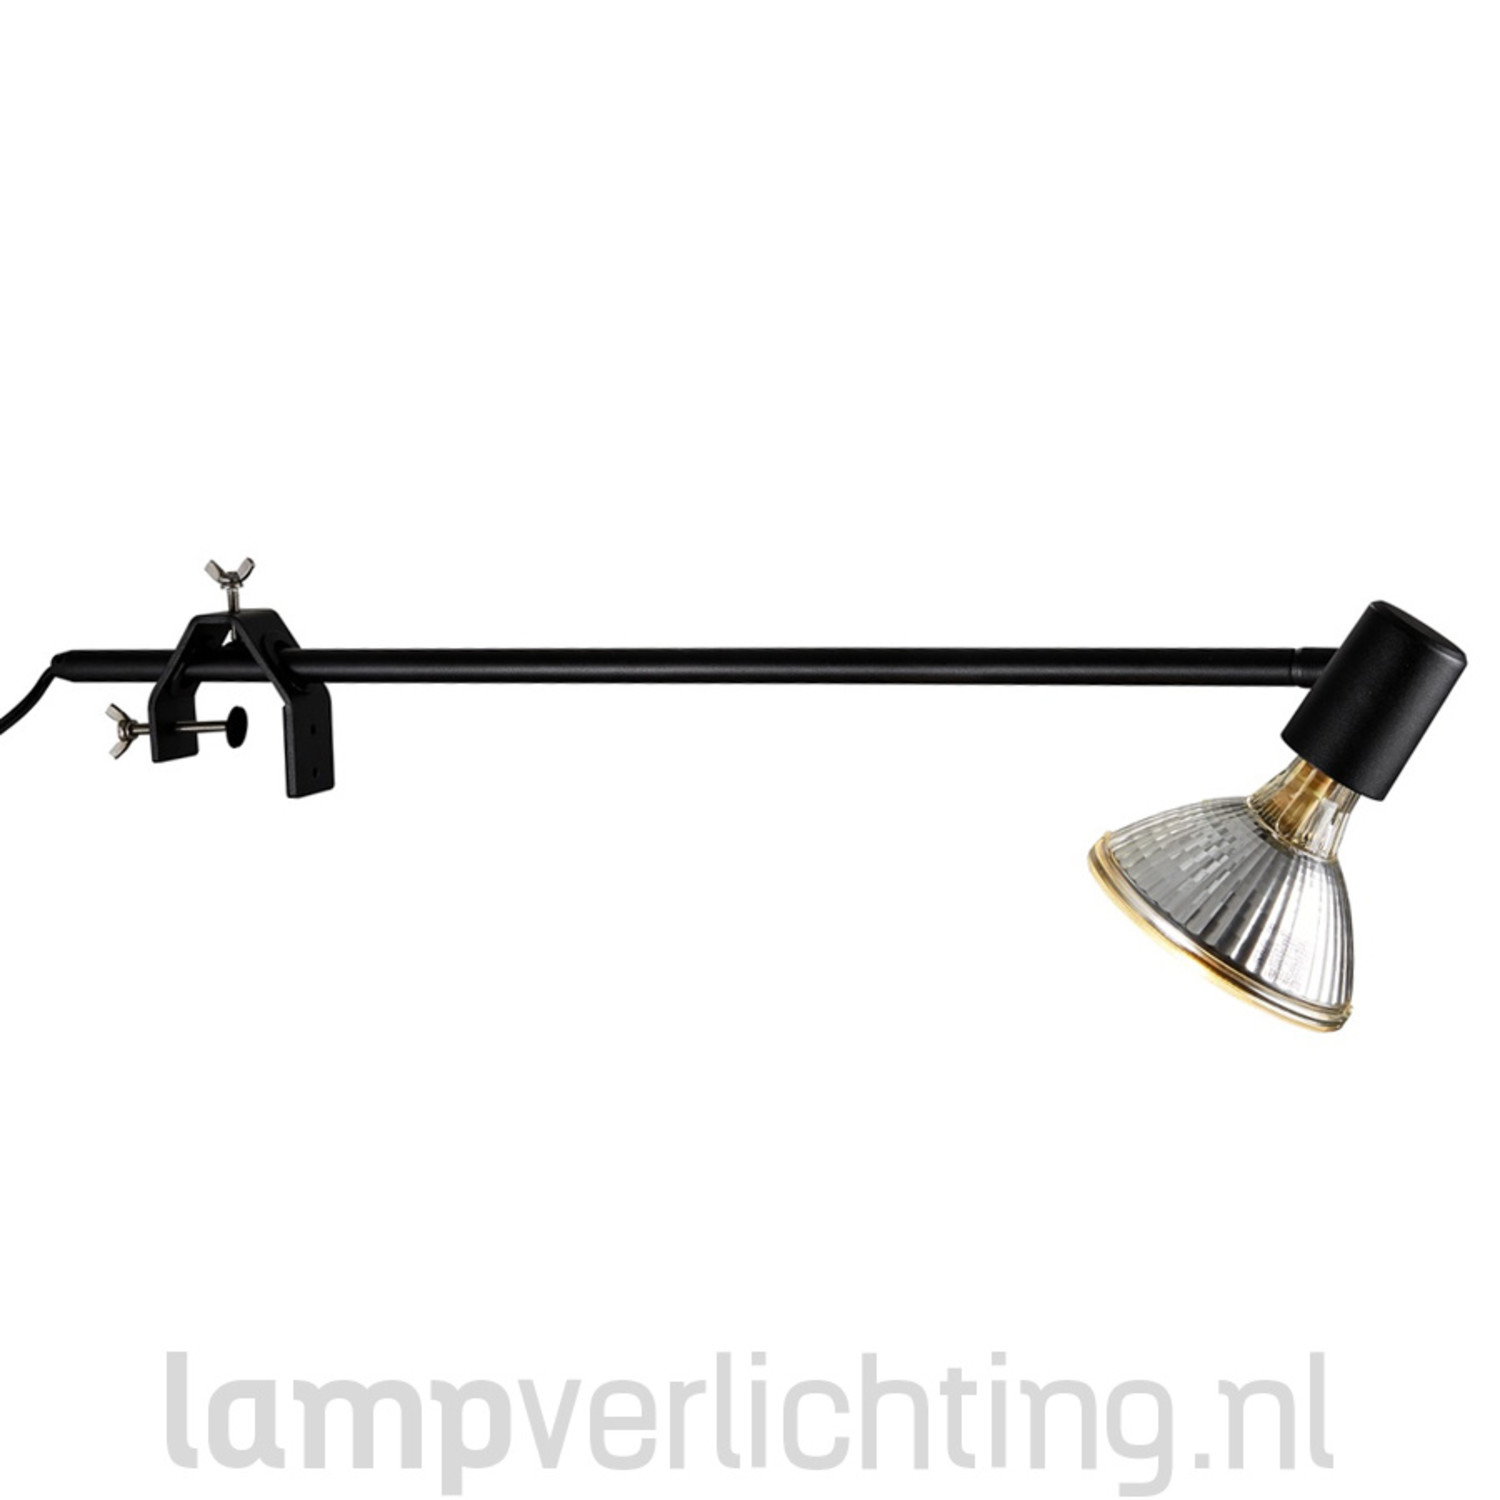 Display Klem E27 - De presentatie spot voor je Beurs of Expositie - LampVerlichting.nl